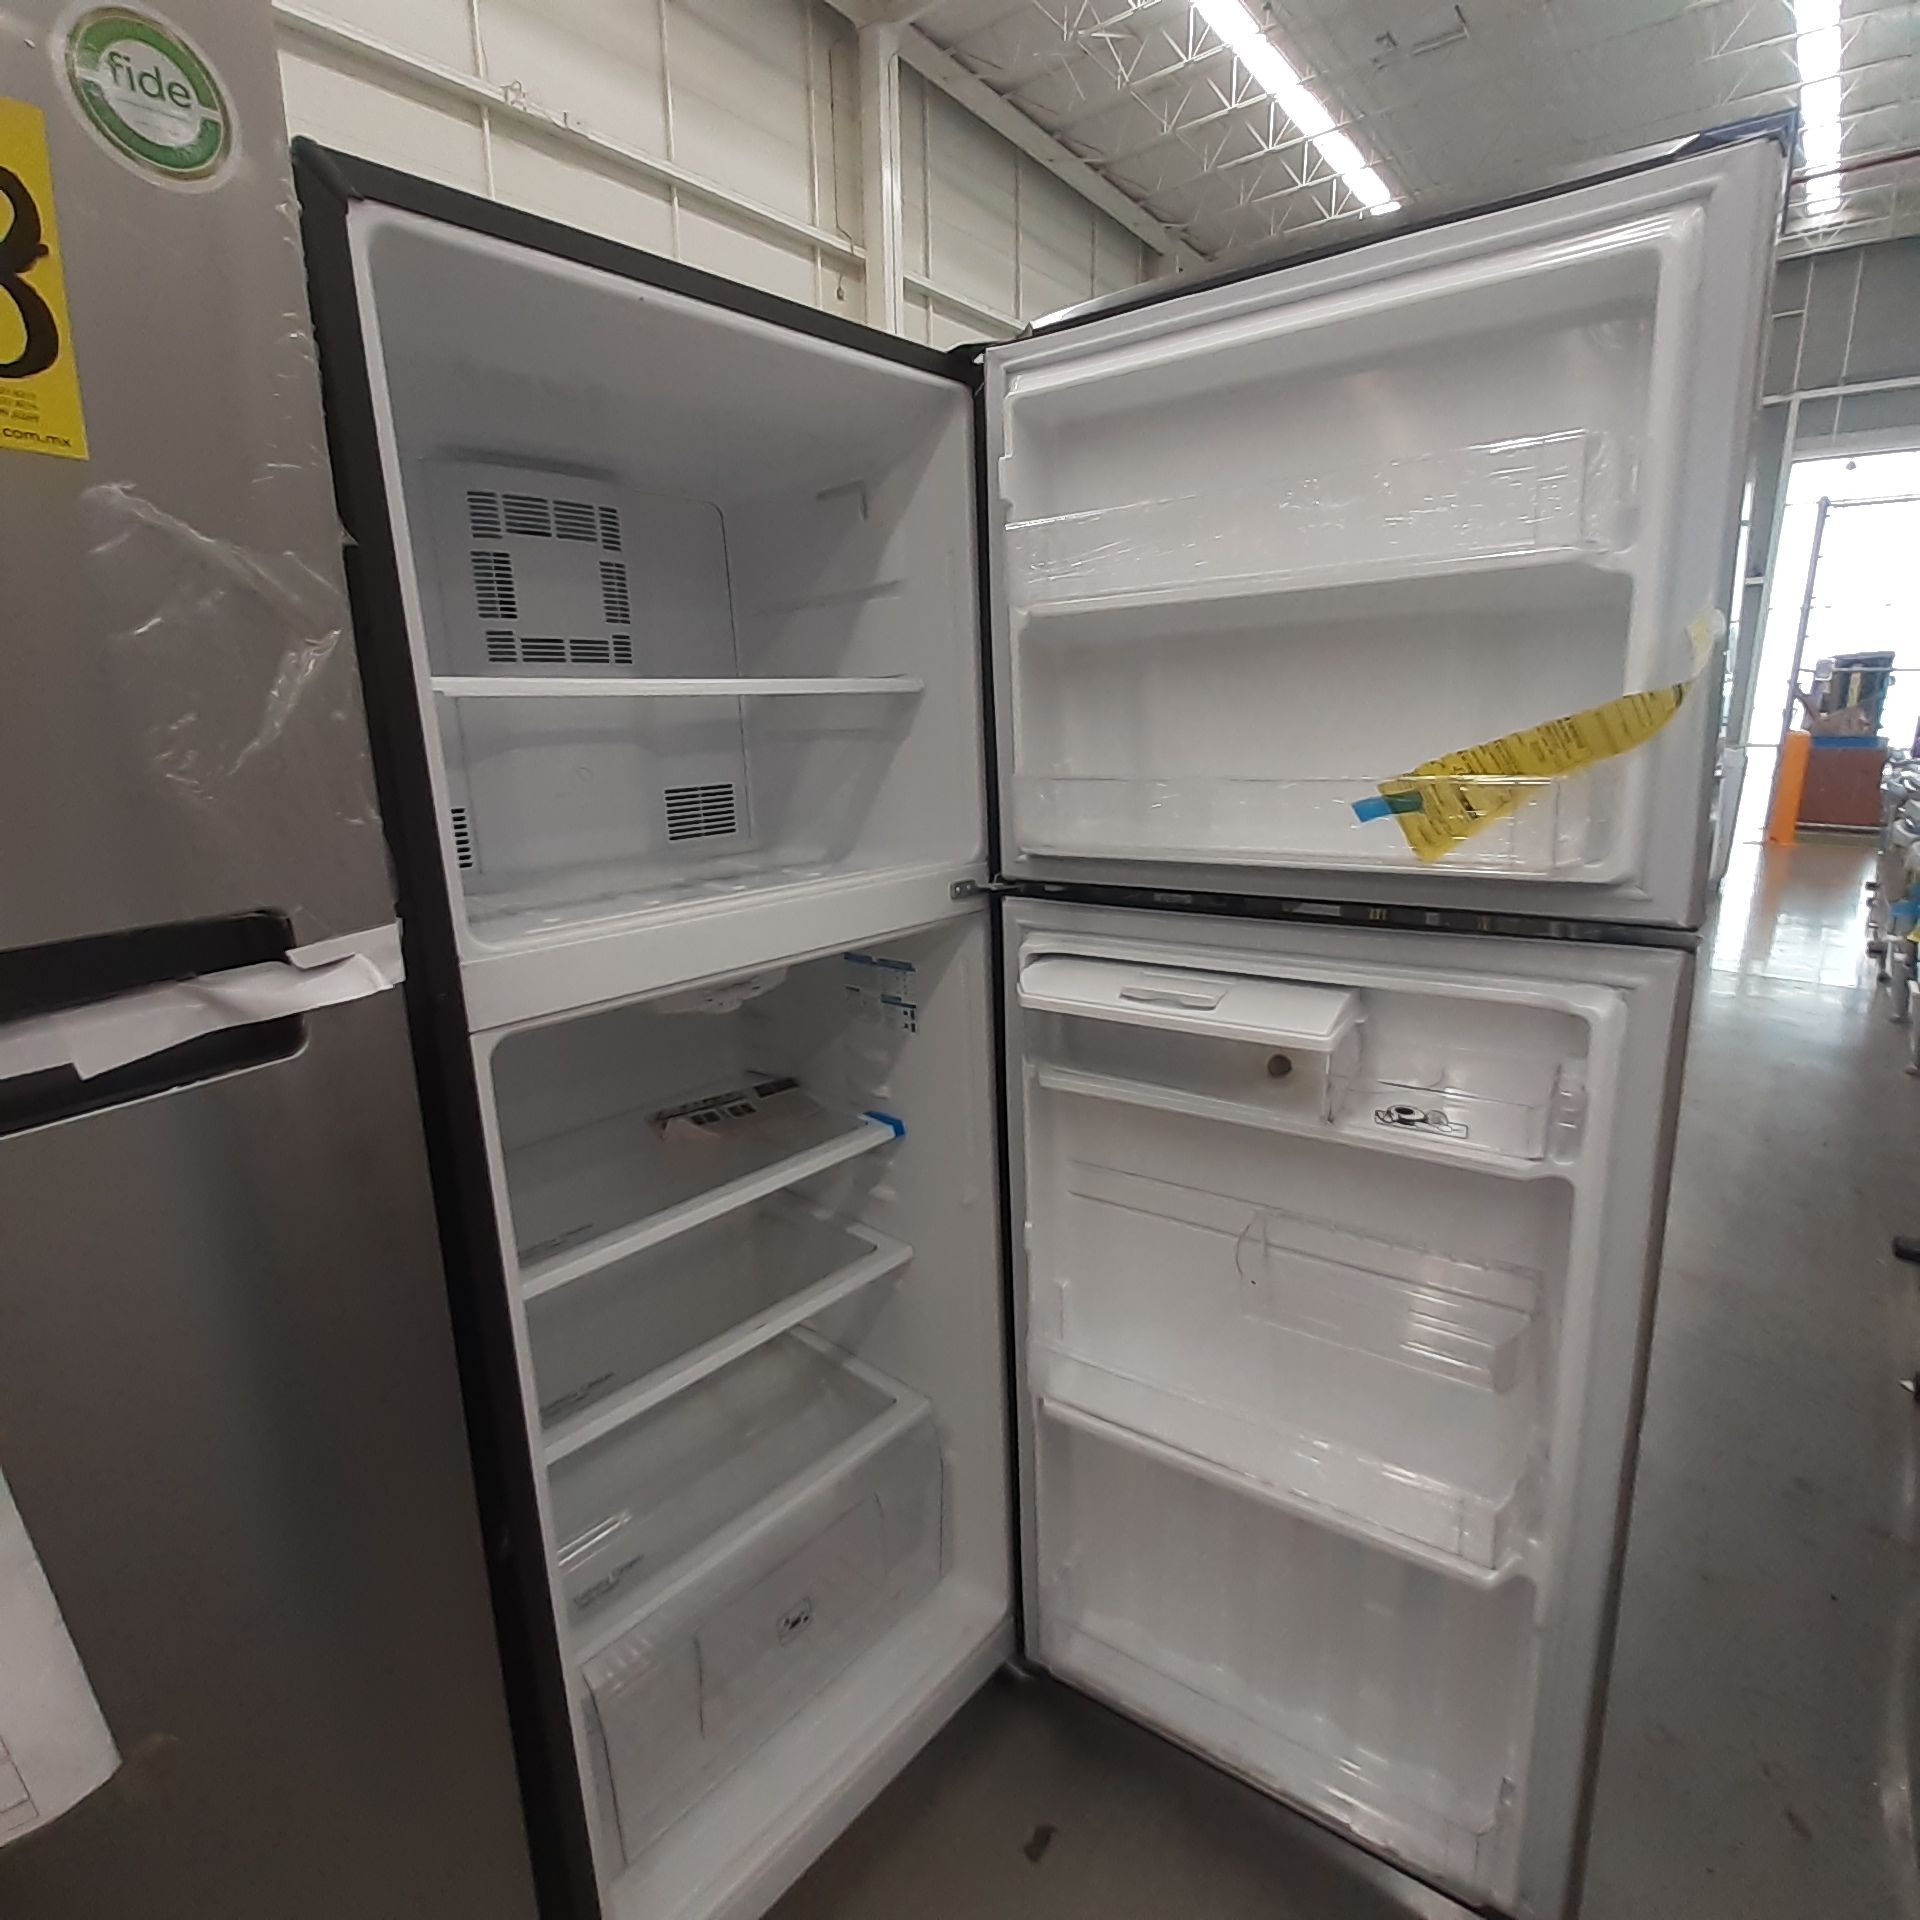 Lote De 3 Refrigeradores: 1 Refrigerador Marca Whirlpool, 1 Refrigerador Marca Mabe, 1 Refrigerador - Image 14 of 22